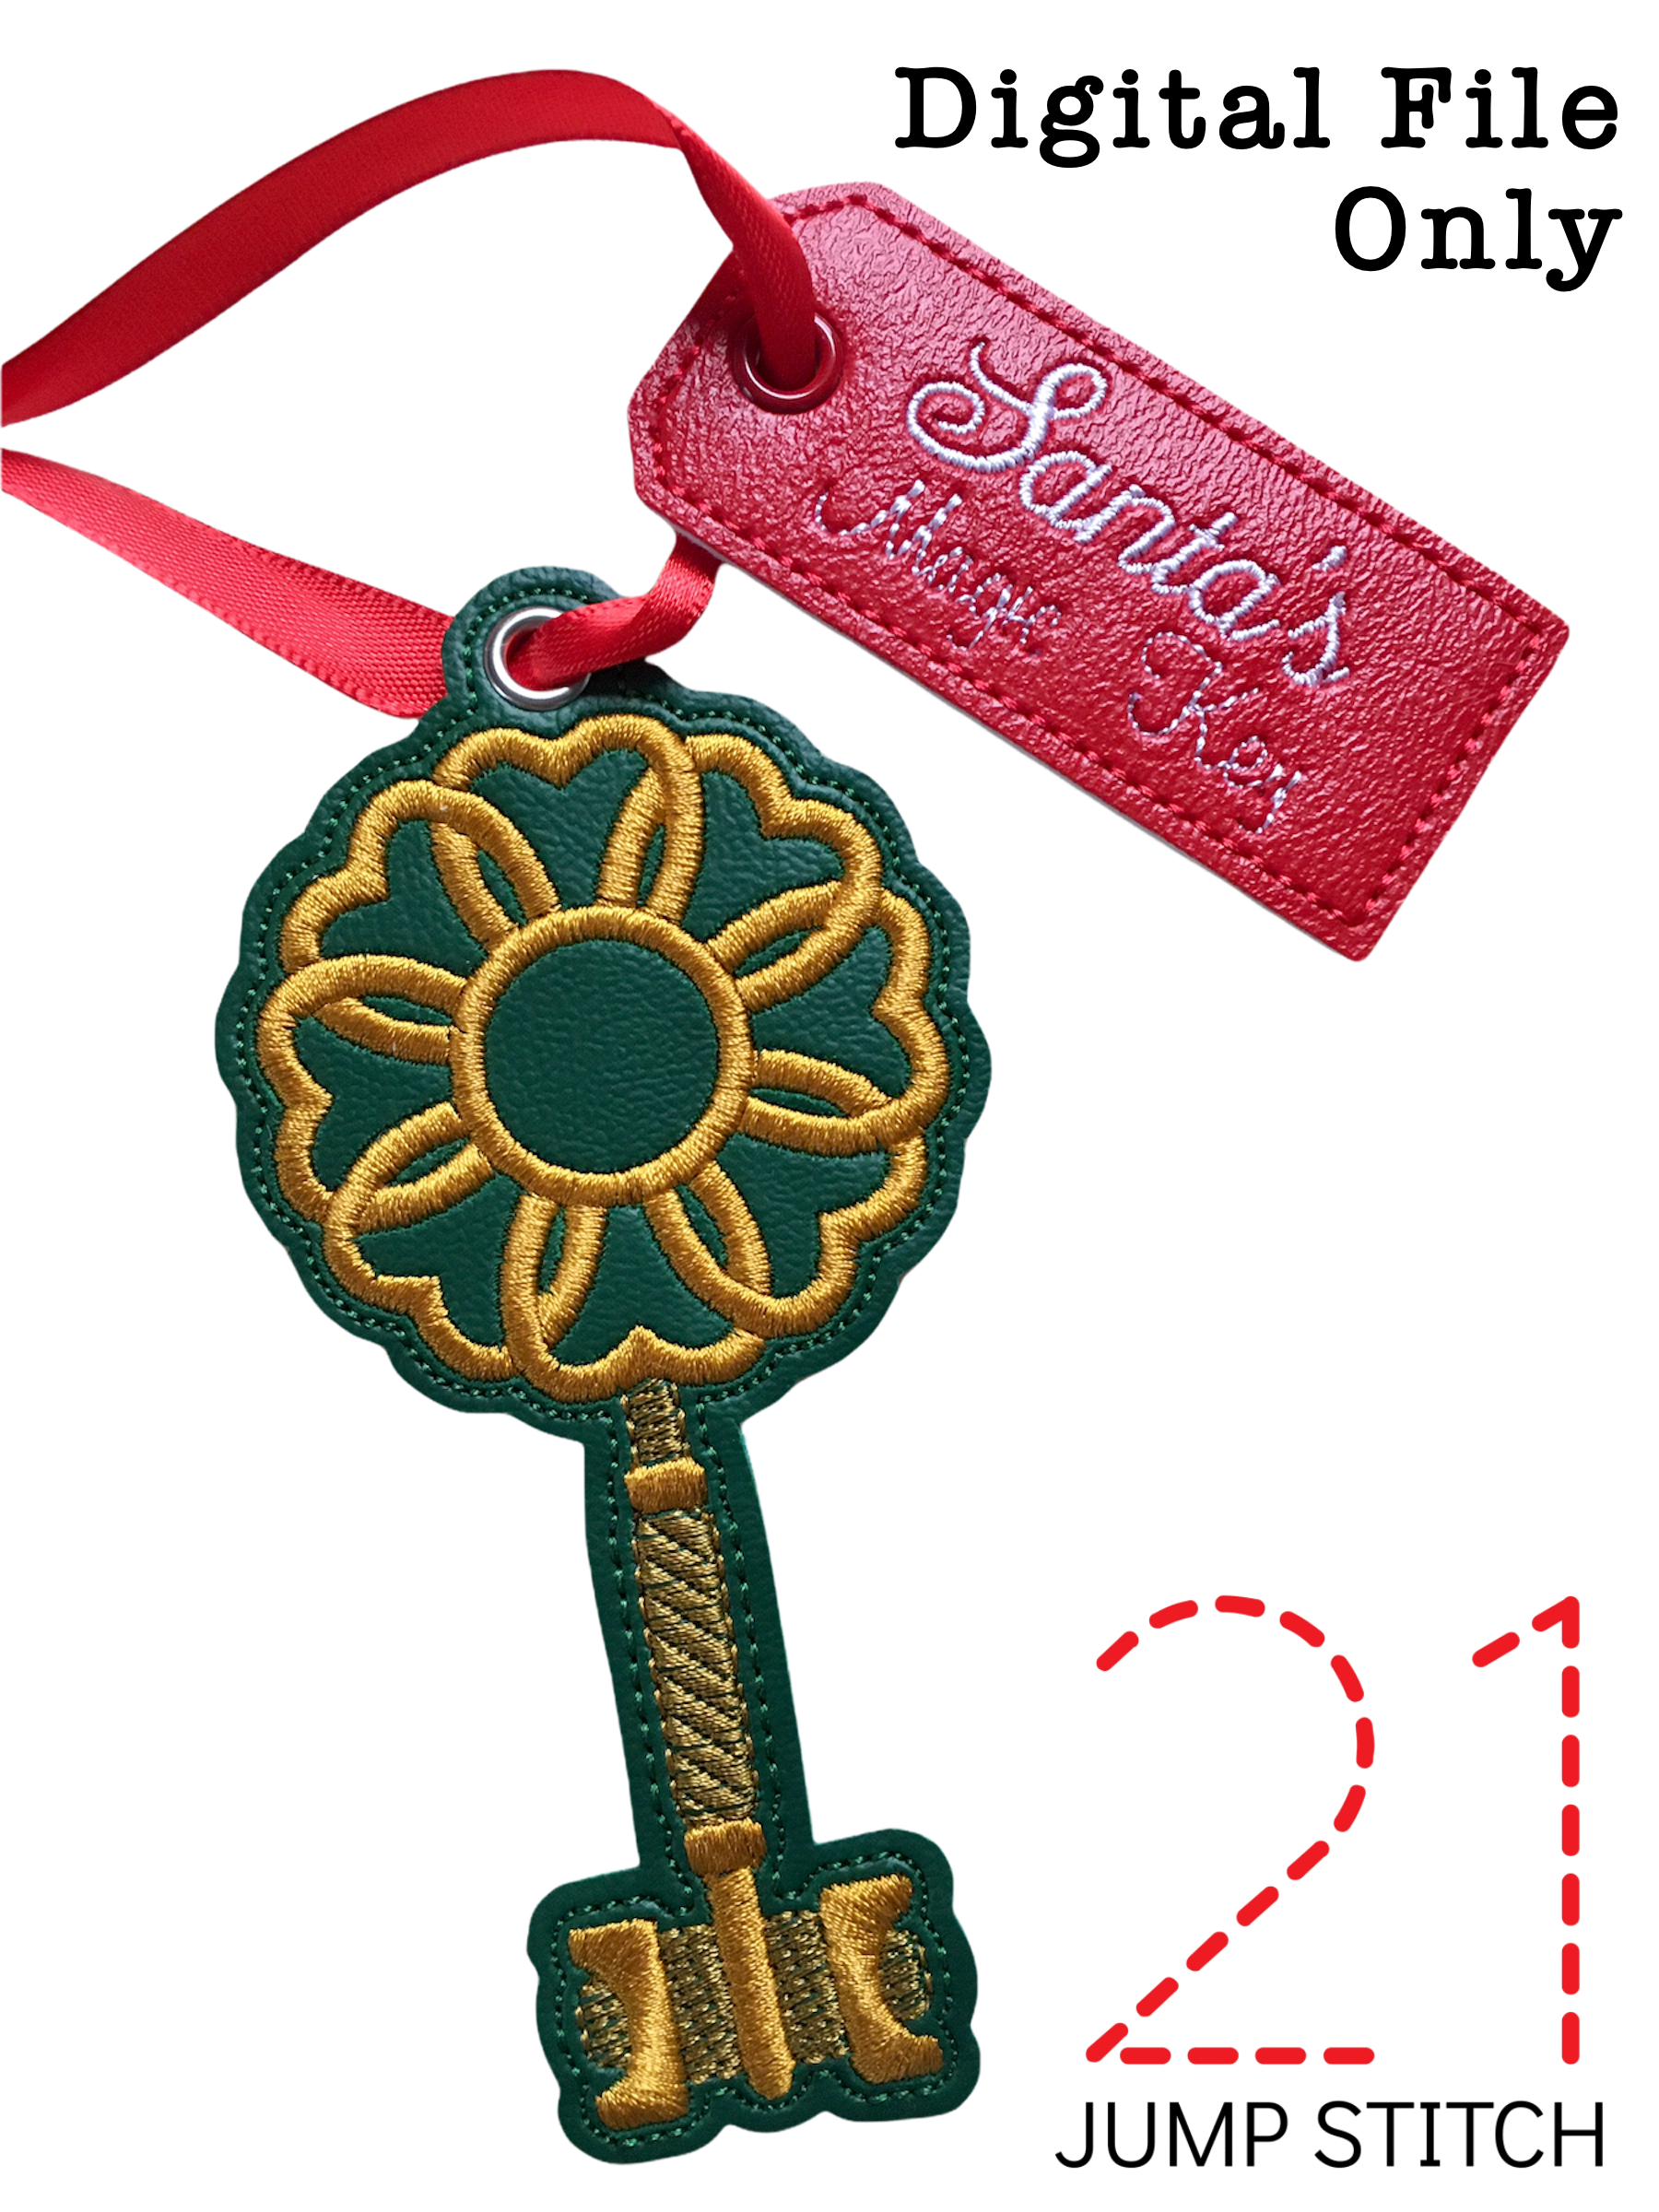 Santa's Magic Key Ornament – 21 Jump Stitch